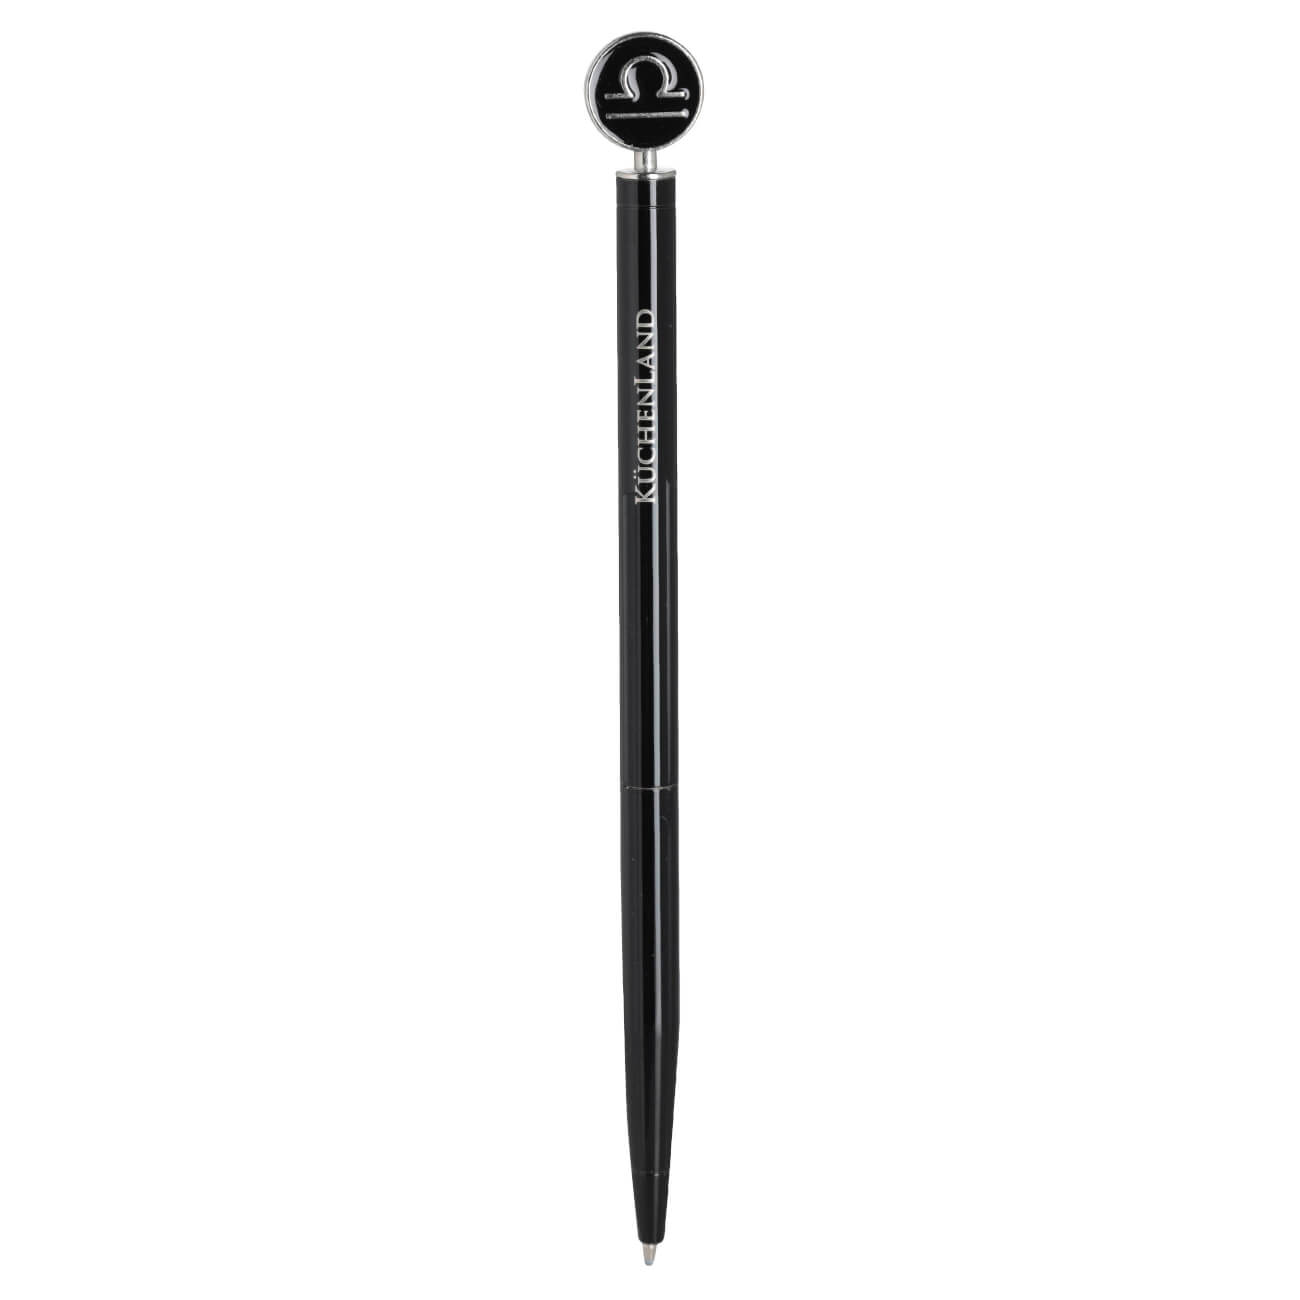 Ручка шариковая, 15 см, с фигуркой, сталь, черно-серебристая, Весы, Zodiac ручка битодержатель wera 817 r 1 4 we 051482